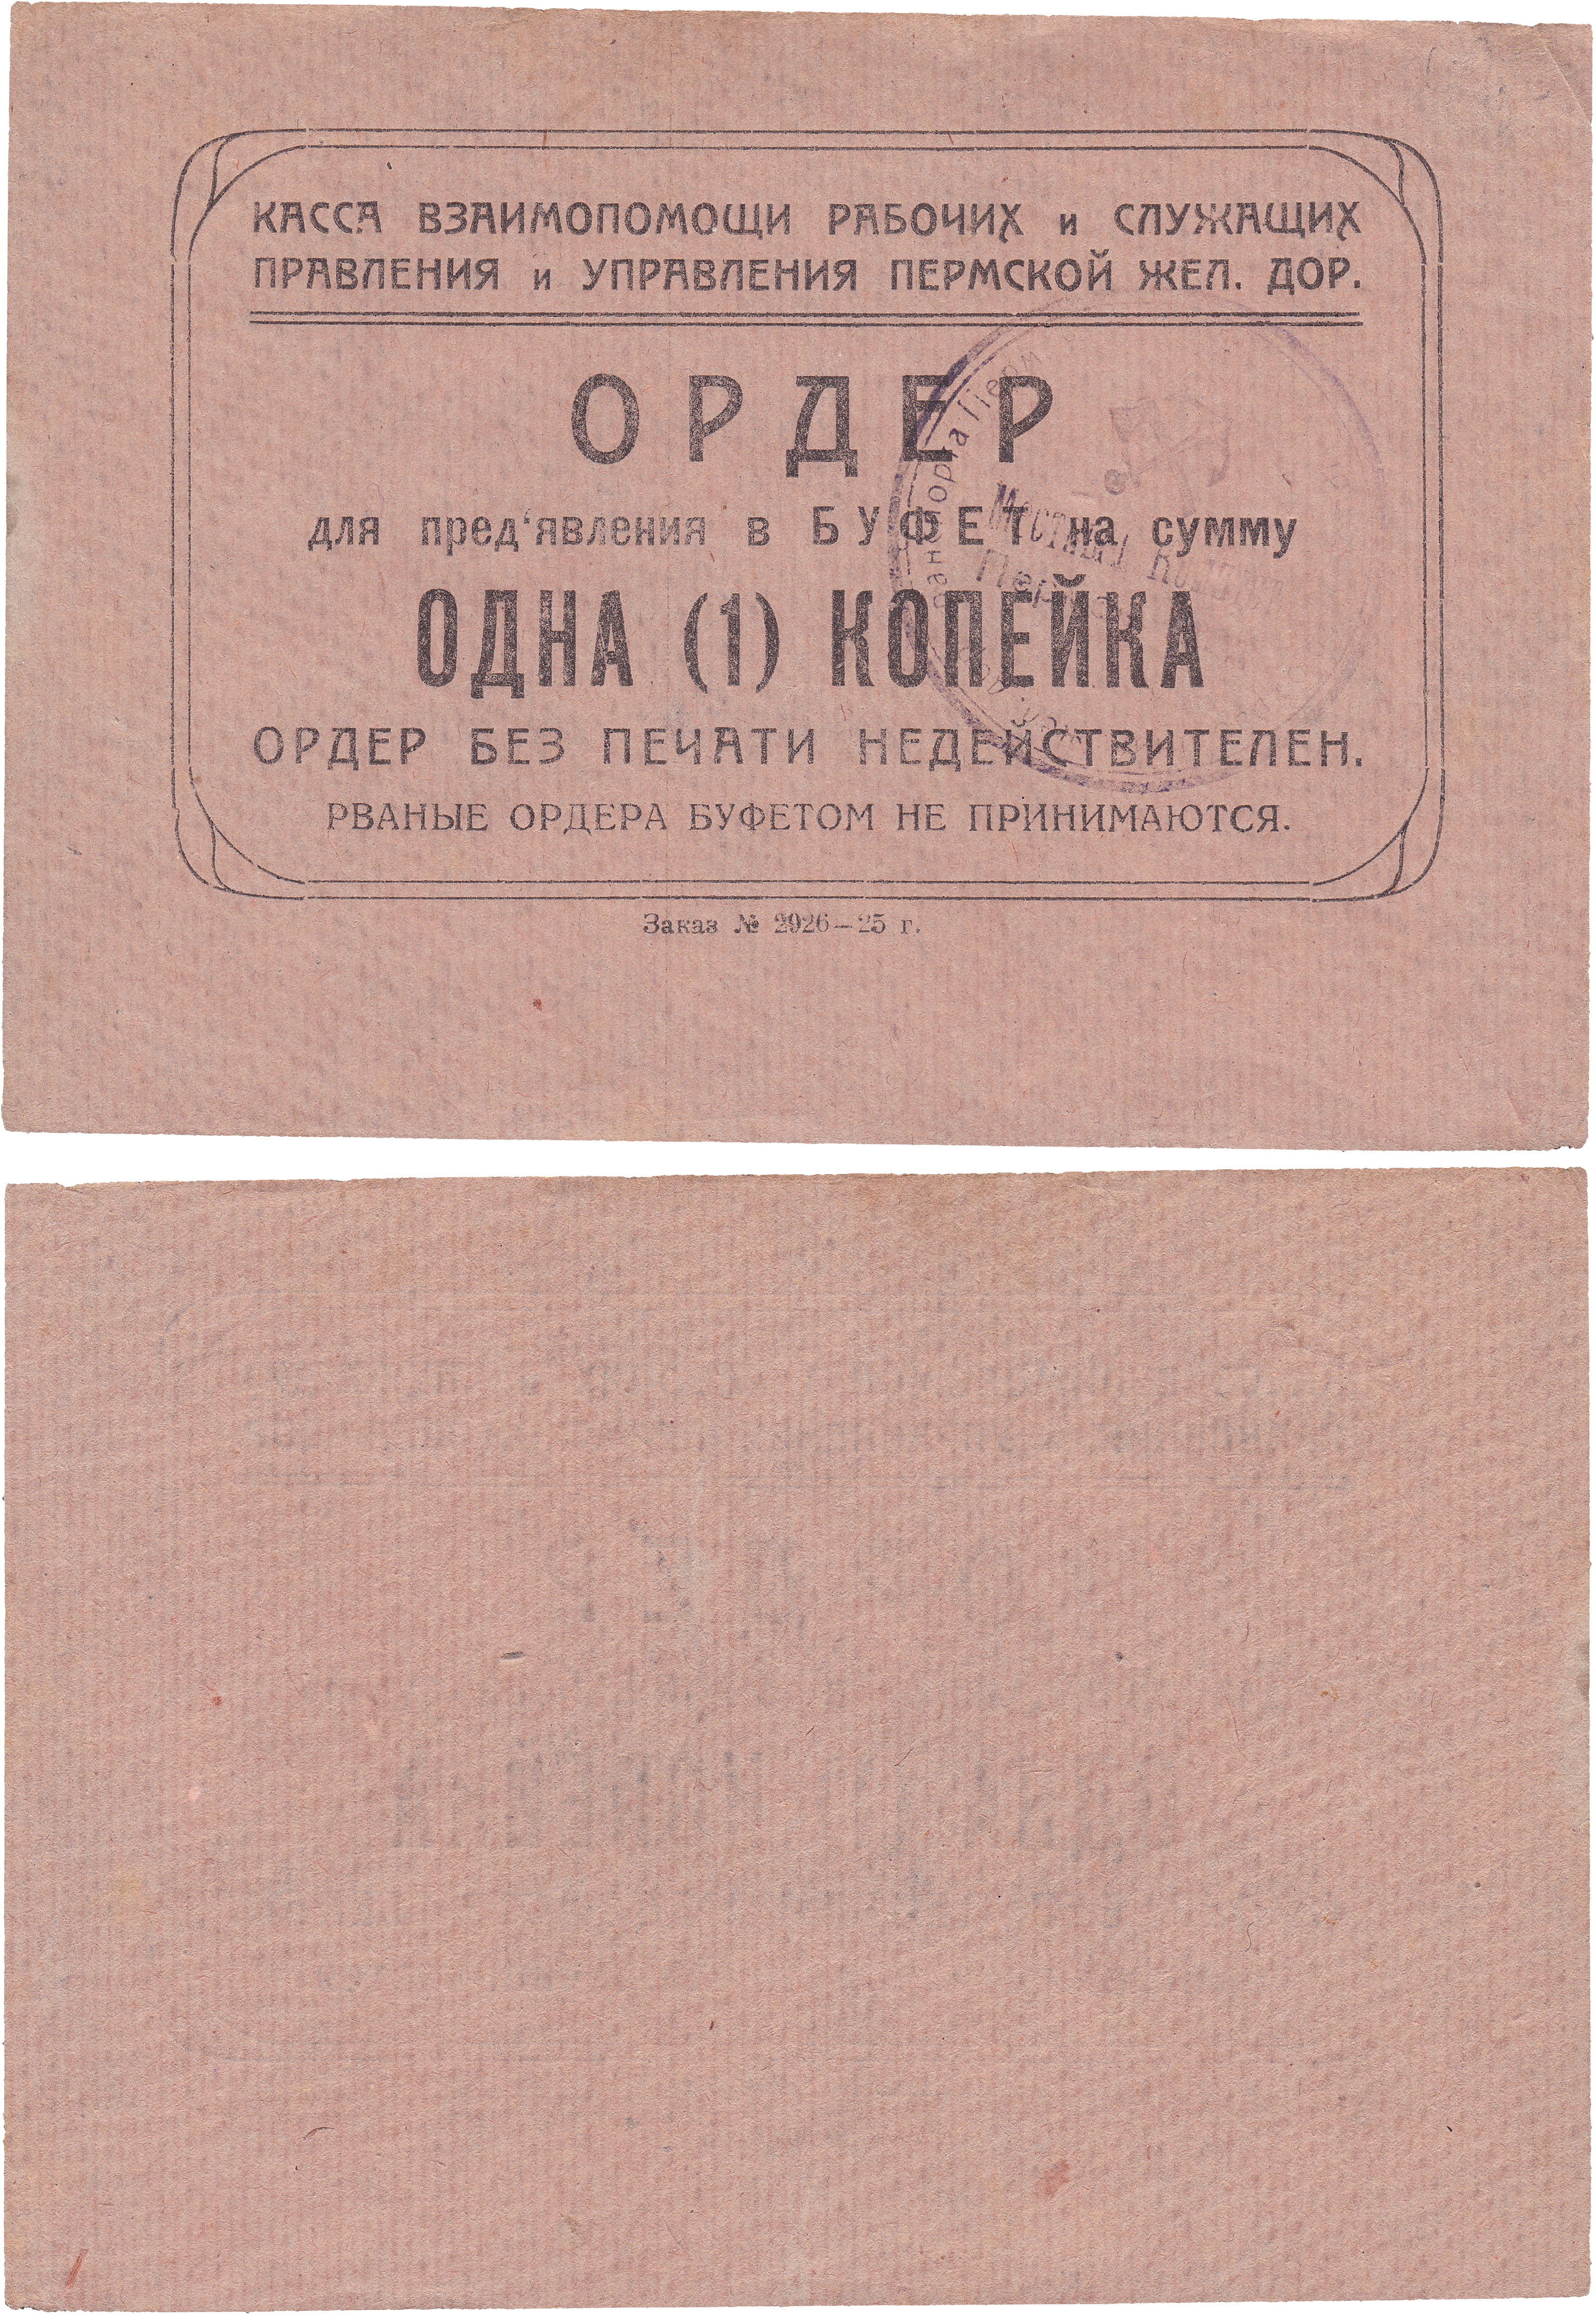 Ордер для предъявления в Буфет на сумму 1 Копейка 1925 год. Касса взаимопомощи рабочих и служащих Пермской Железной Дороги